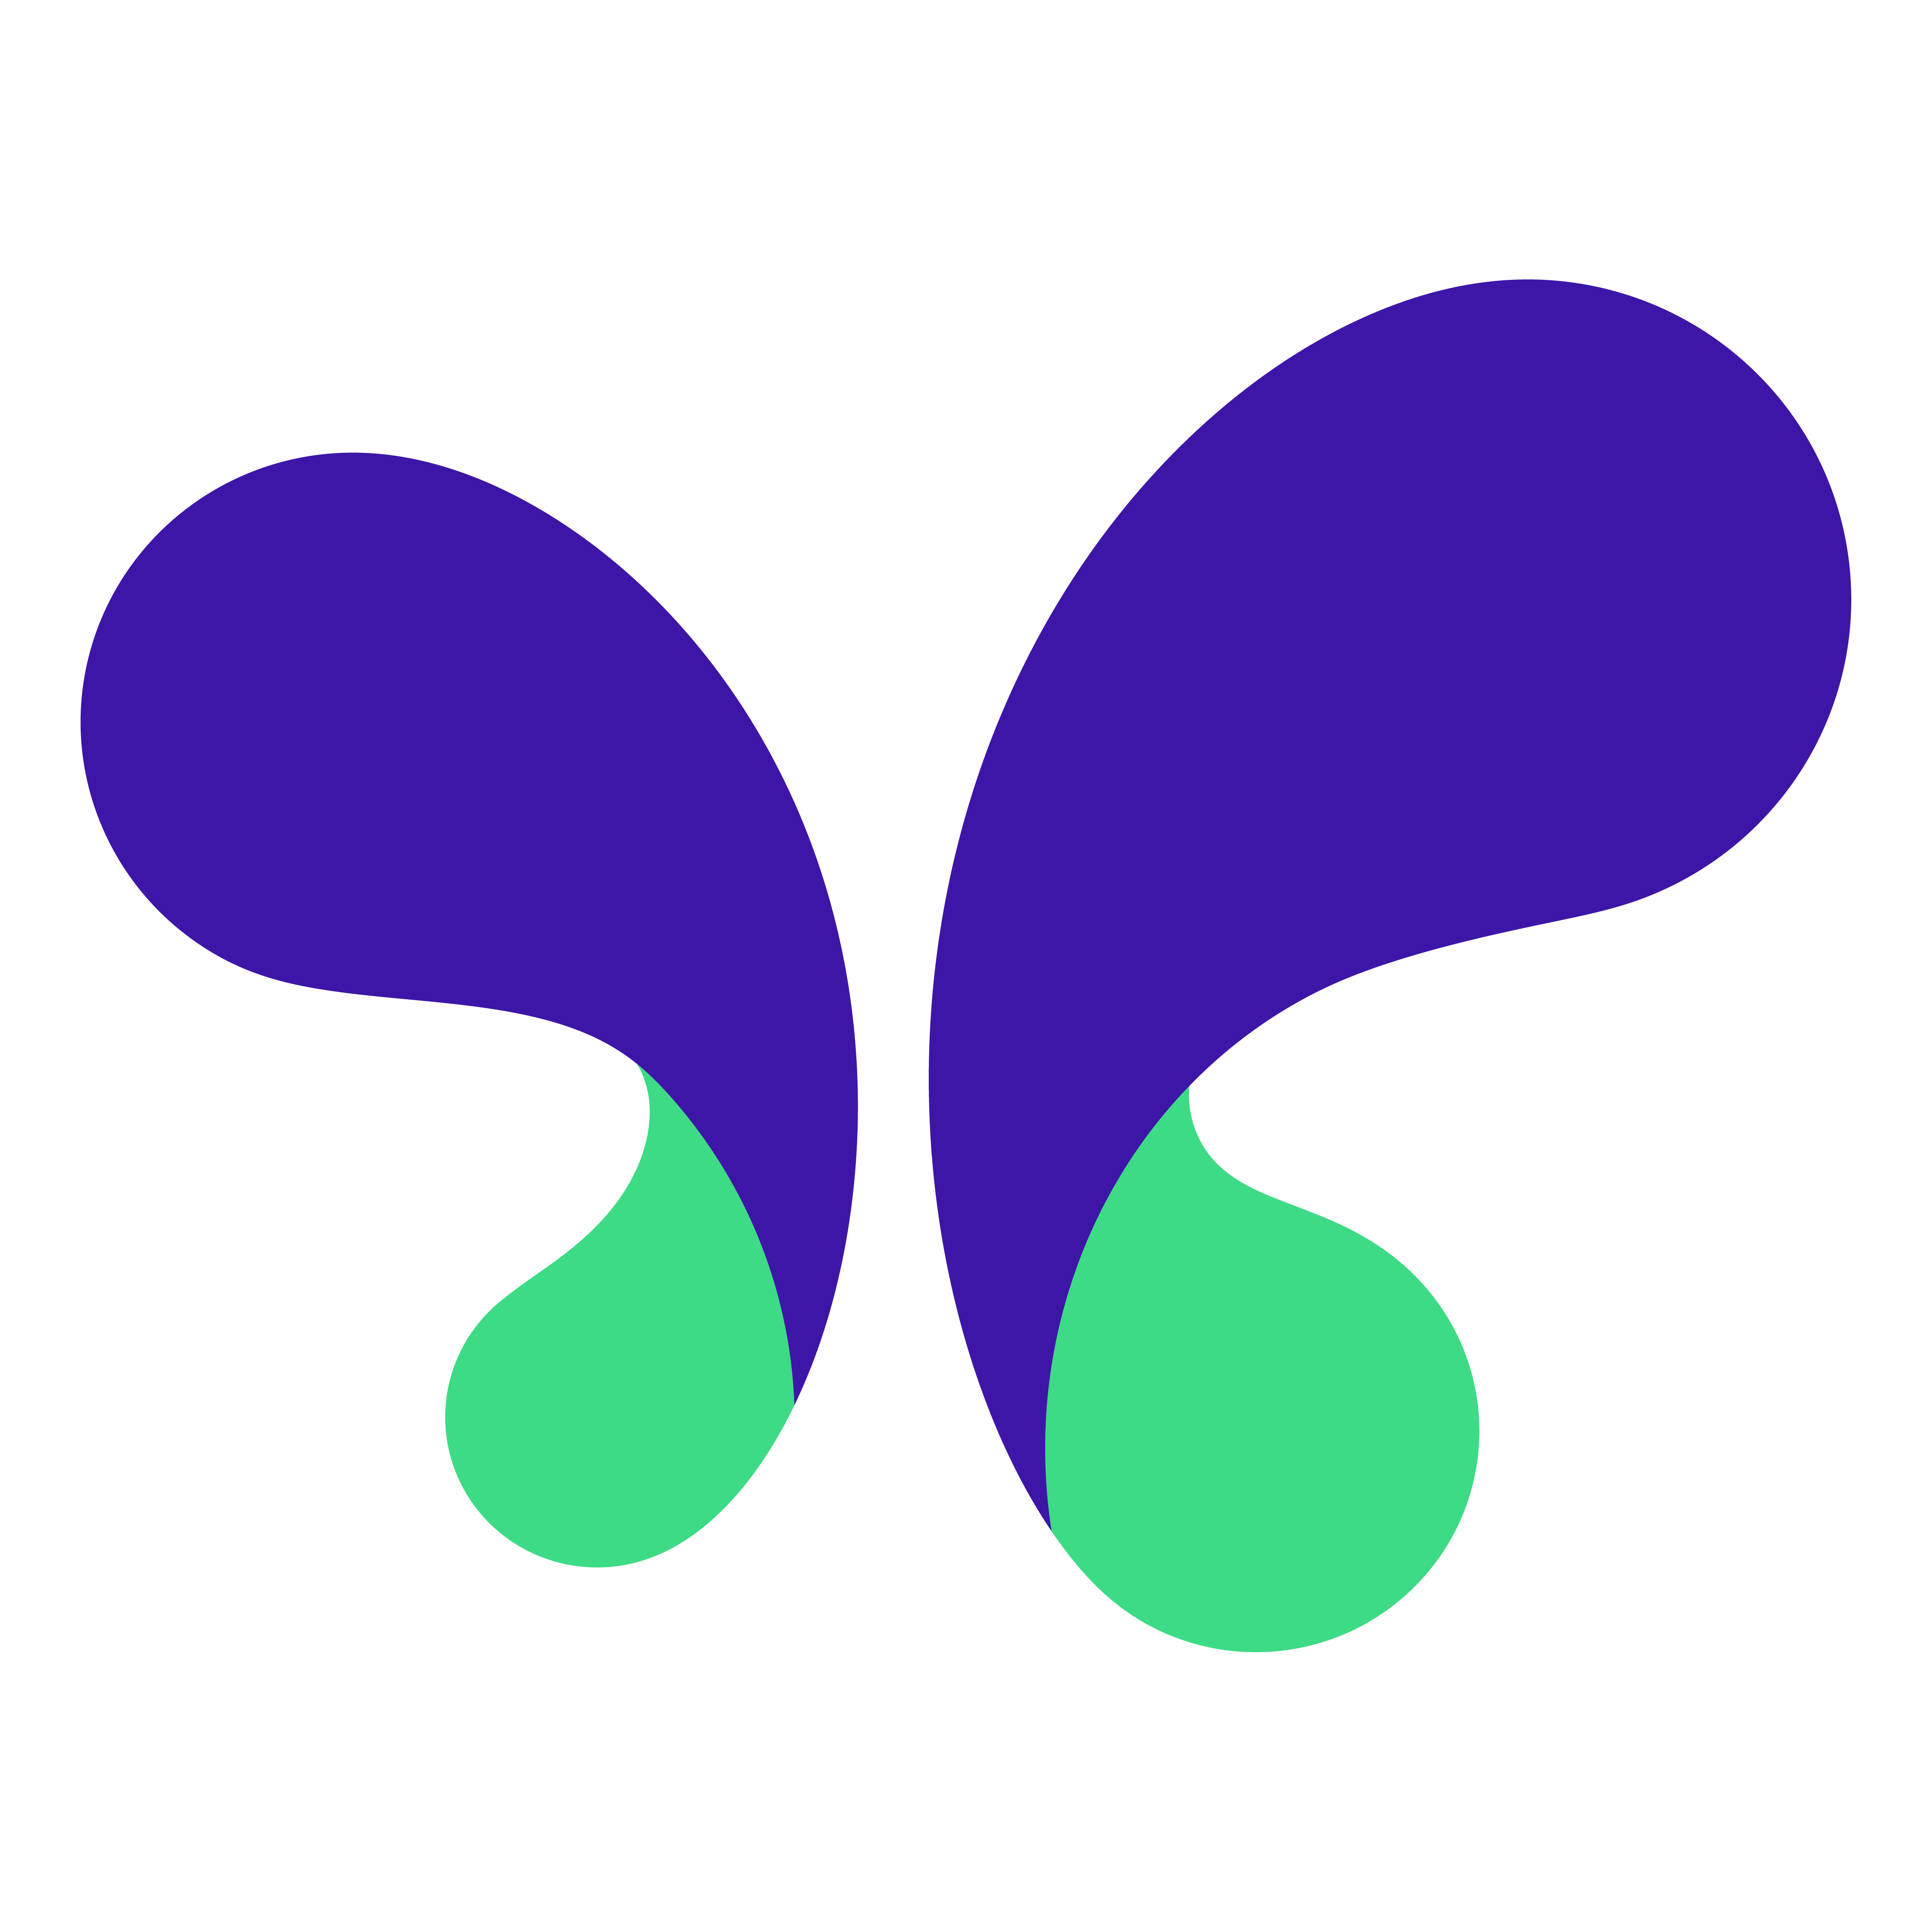 הלוגו של MakerSuite